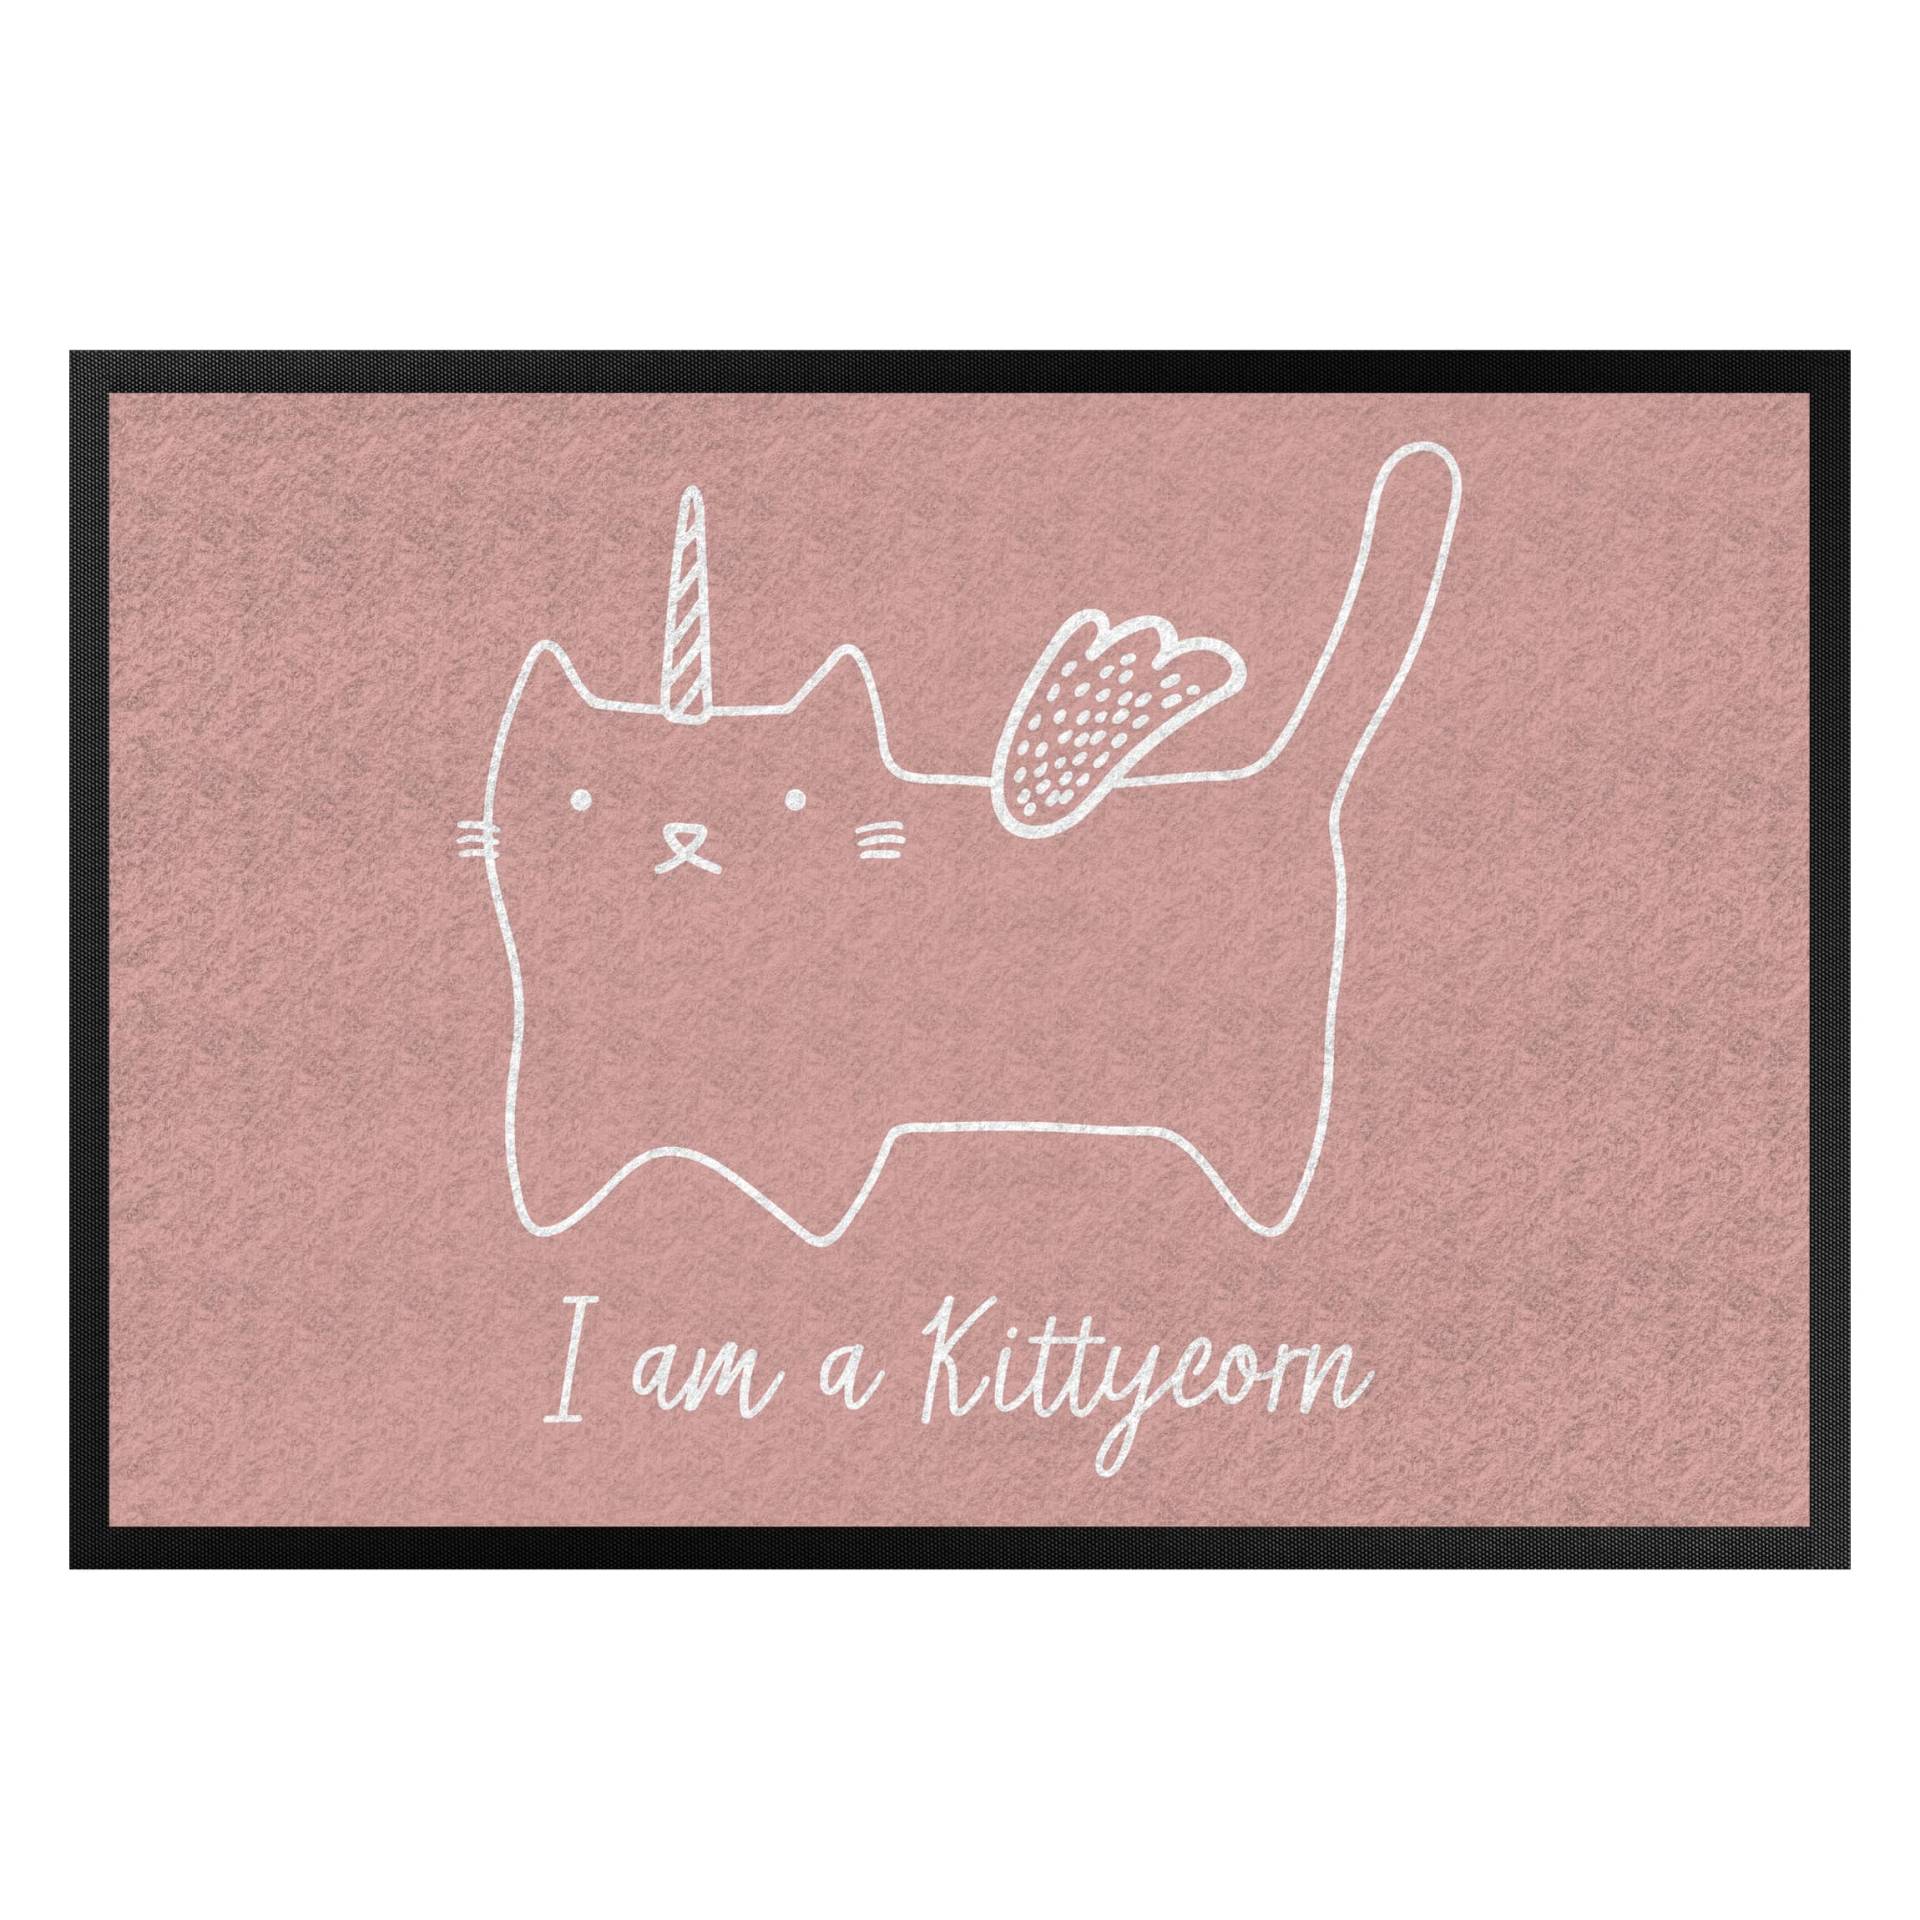 Fußmatte Kittycorn von Klebefieber